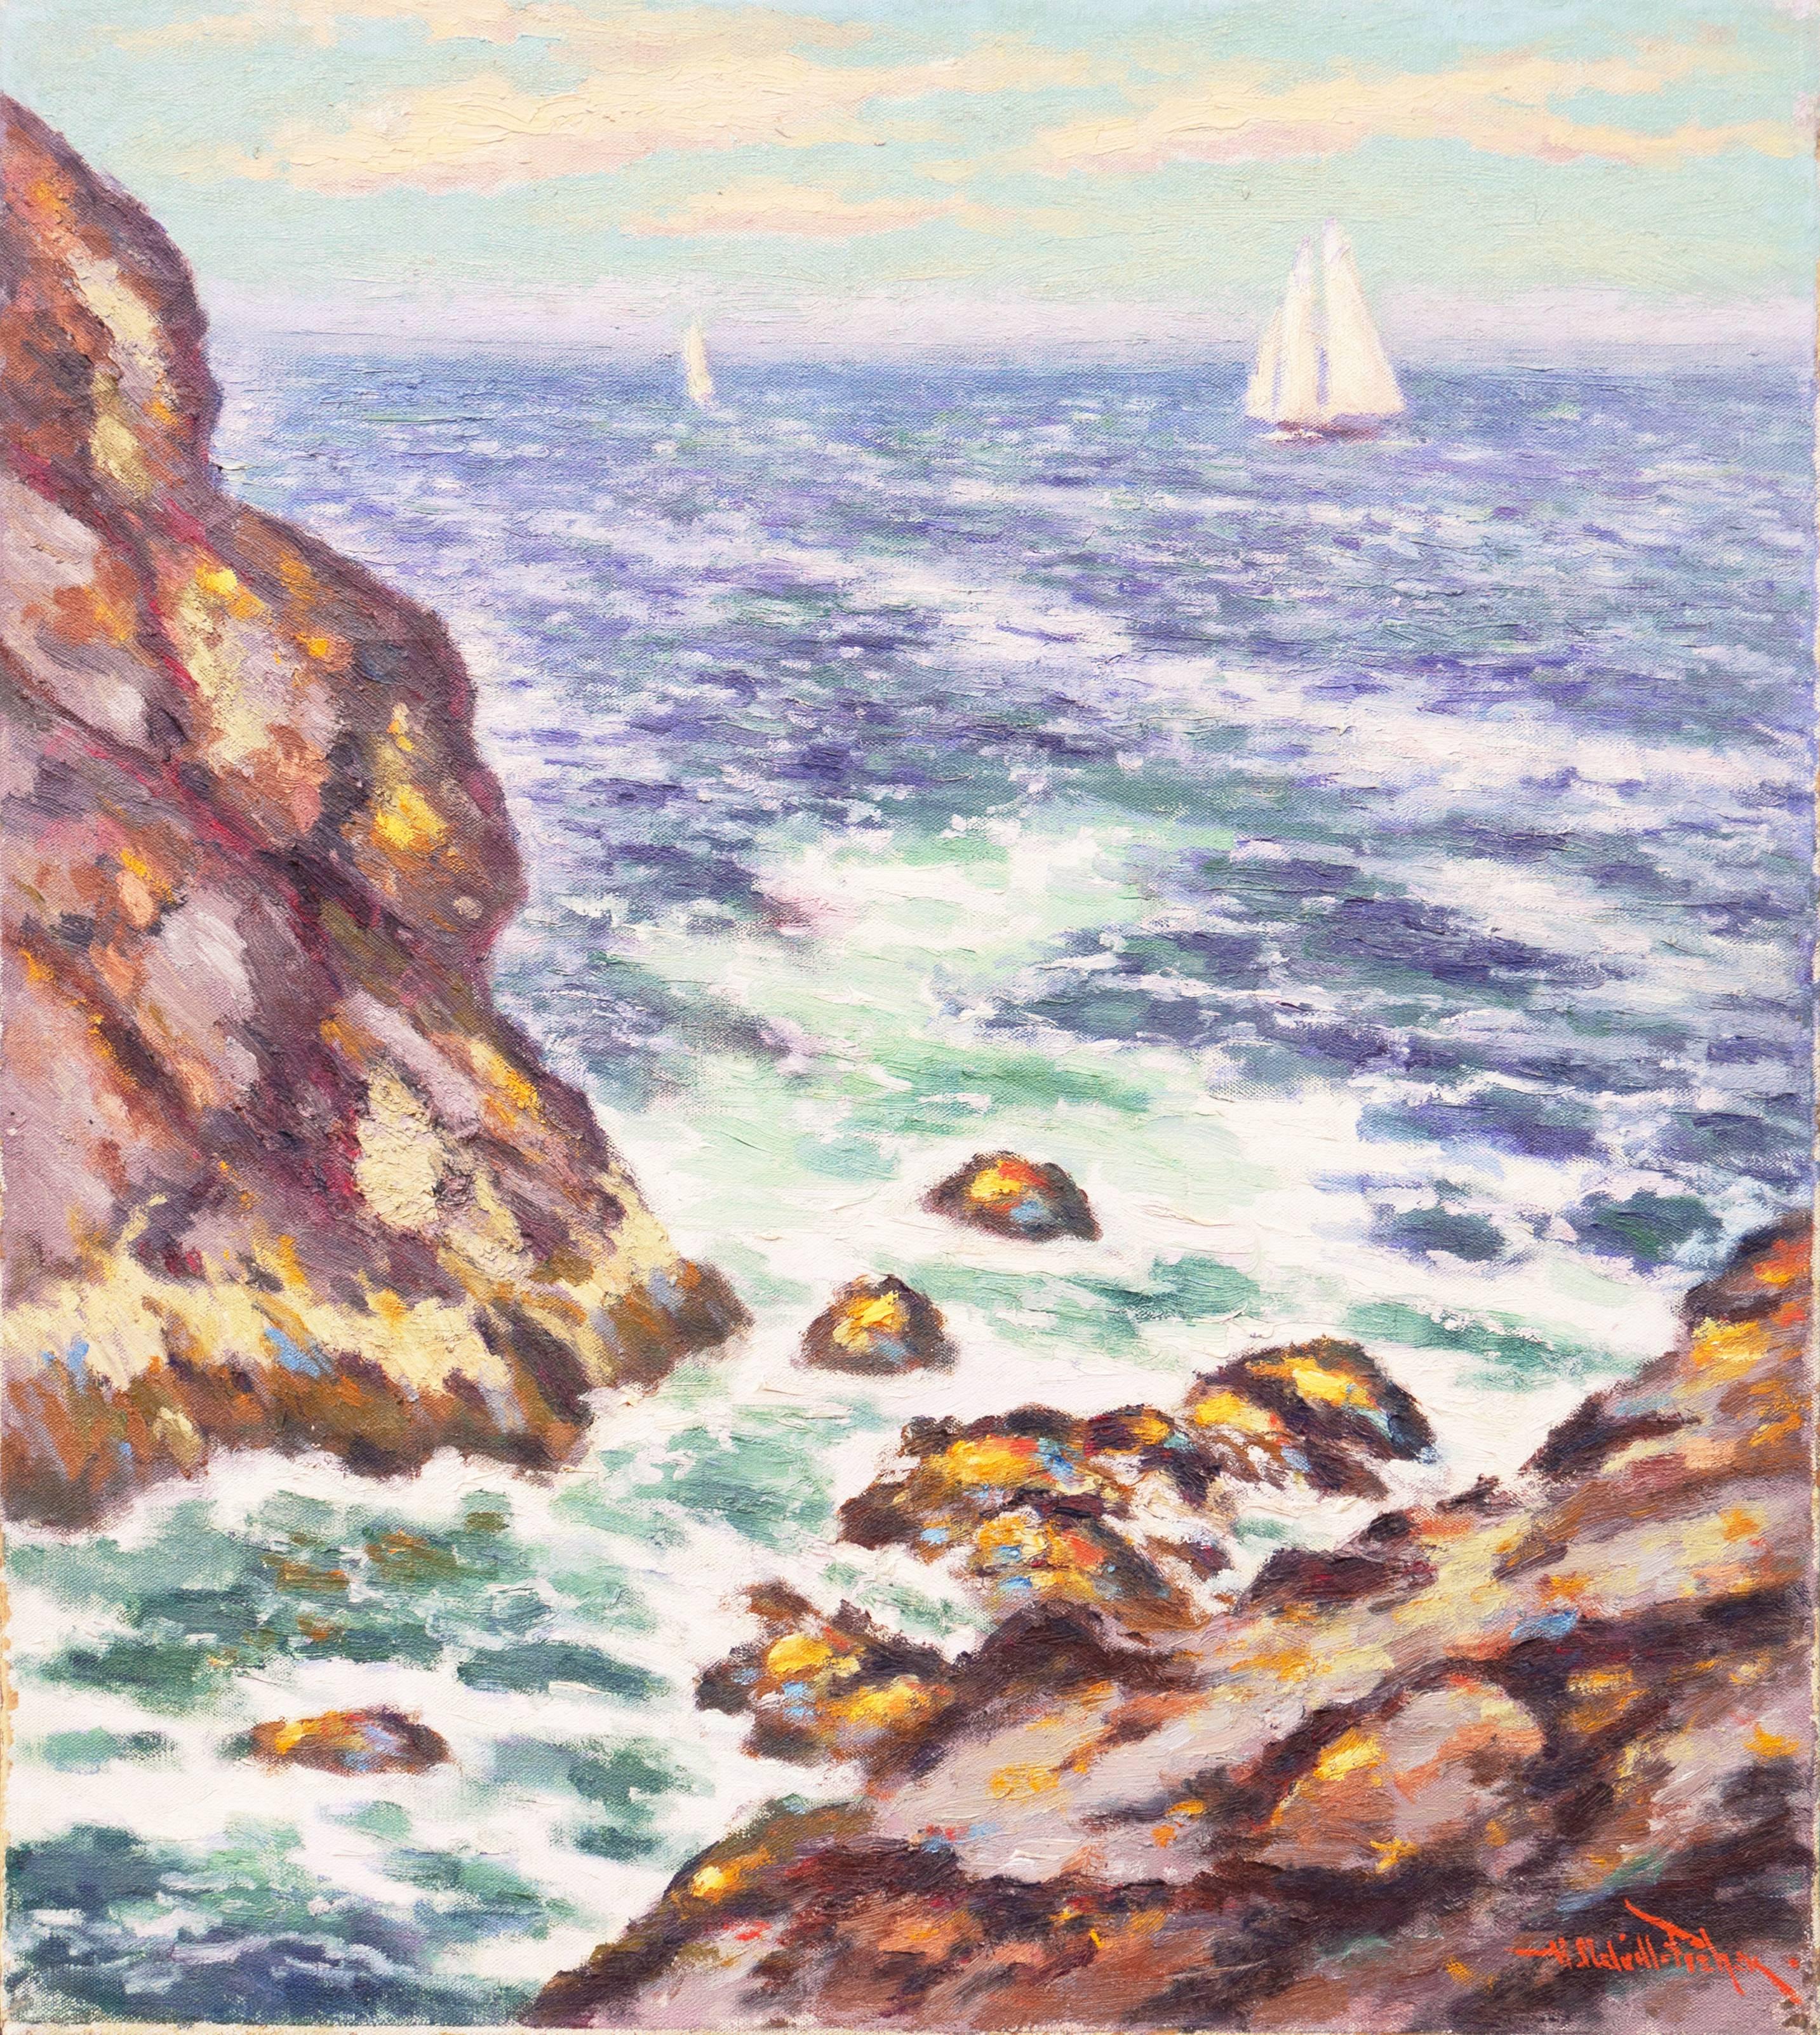 Hugo Melville Fisher Landscape Painting - 'New England Coast', Paris, New York, Royal Academy of Art, London, Benezit